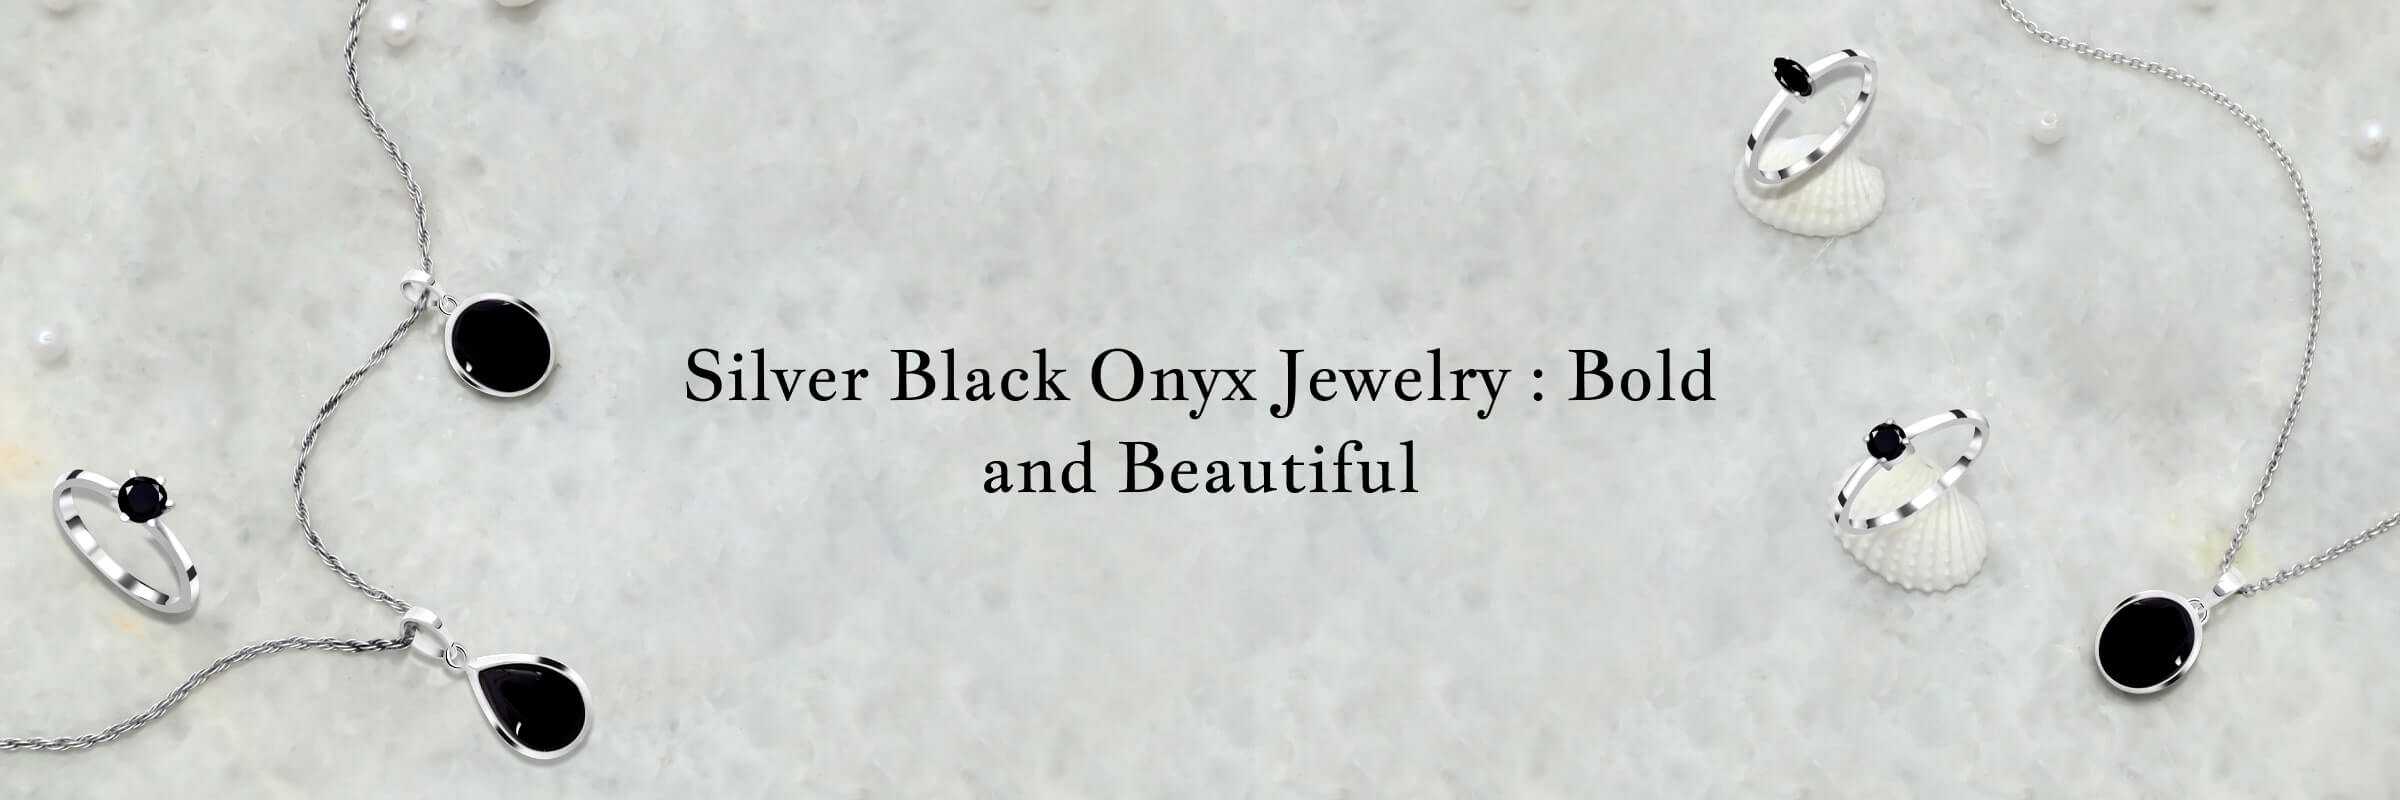 Silver Black Onyx Jewelry